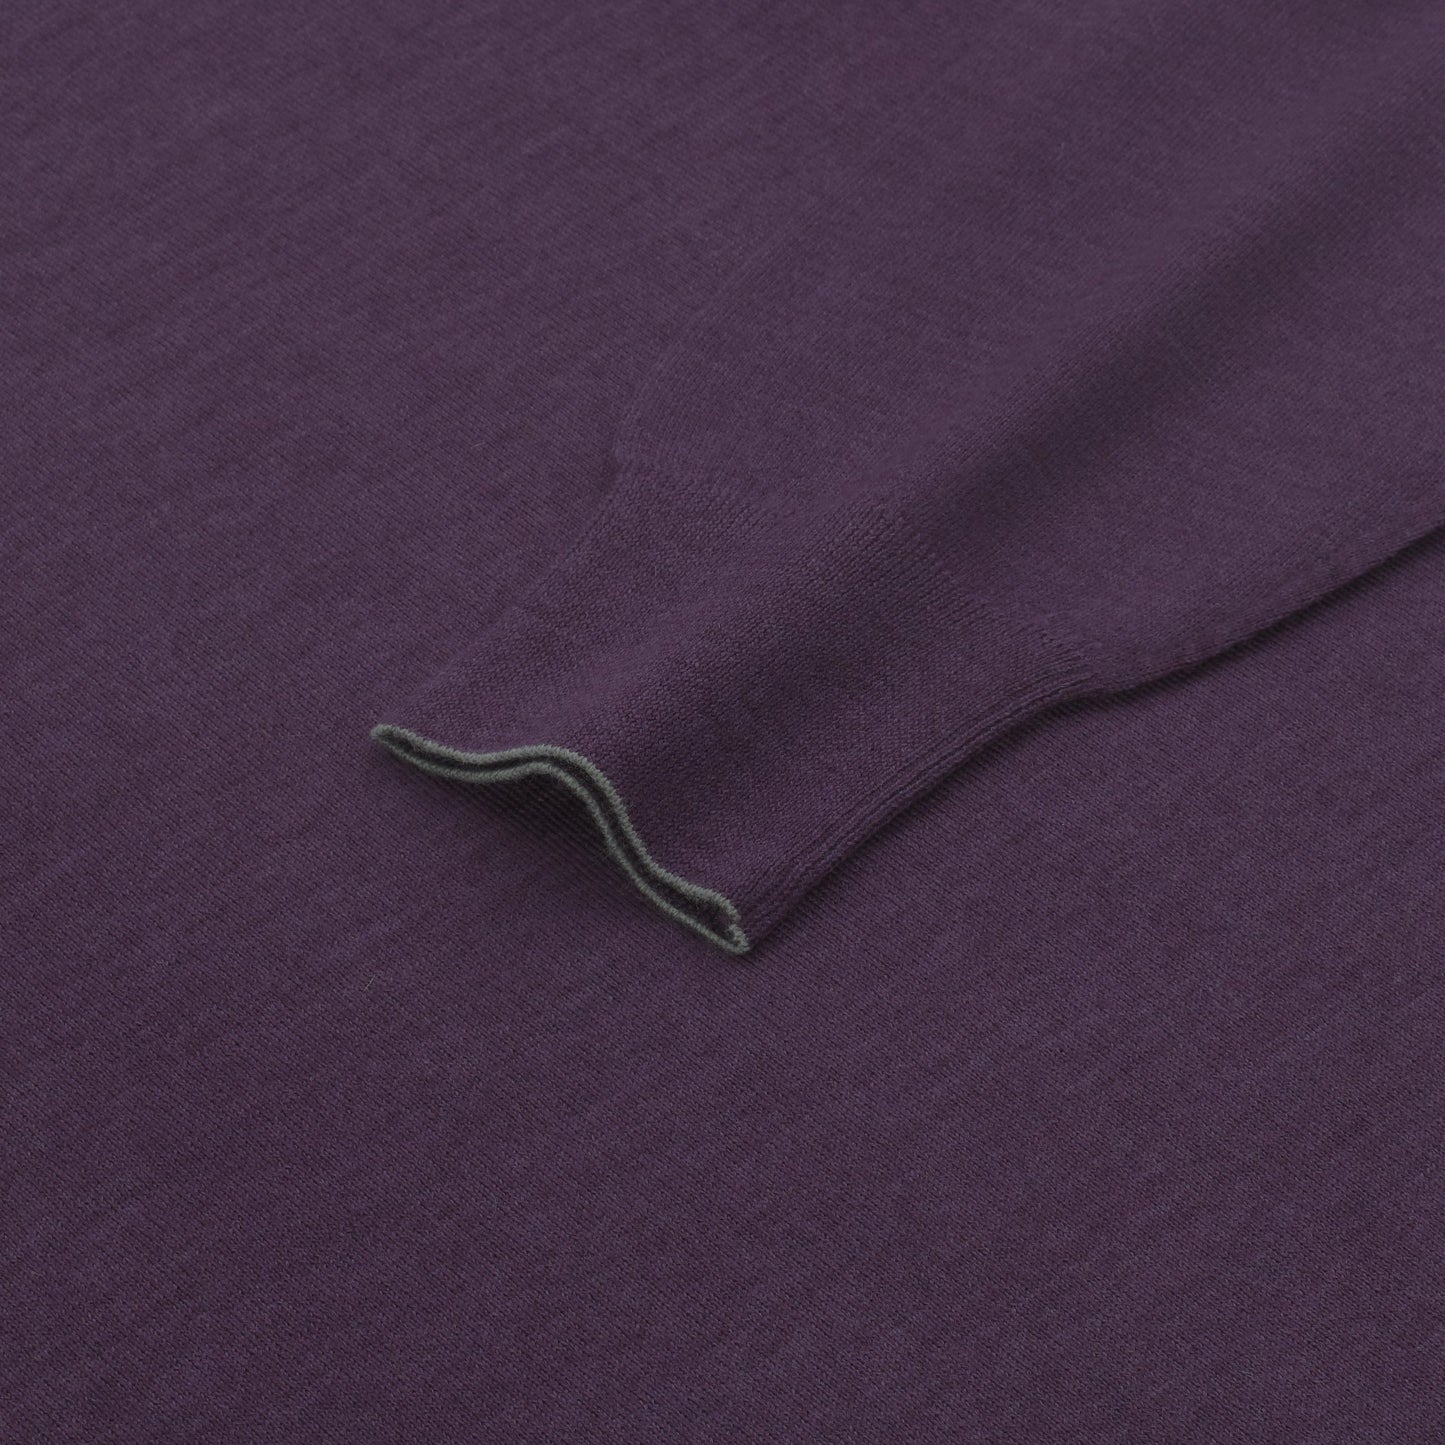 Cruciani Wool Crew - Neck Sweater in Purple - SARTALE